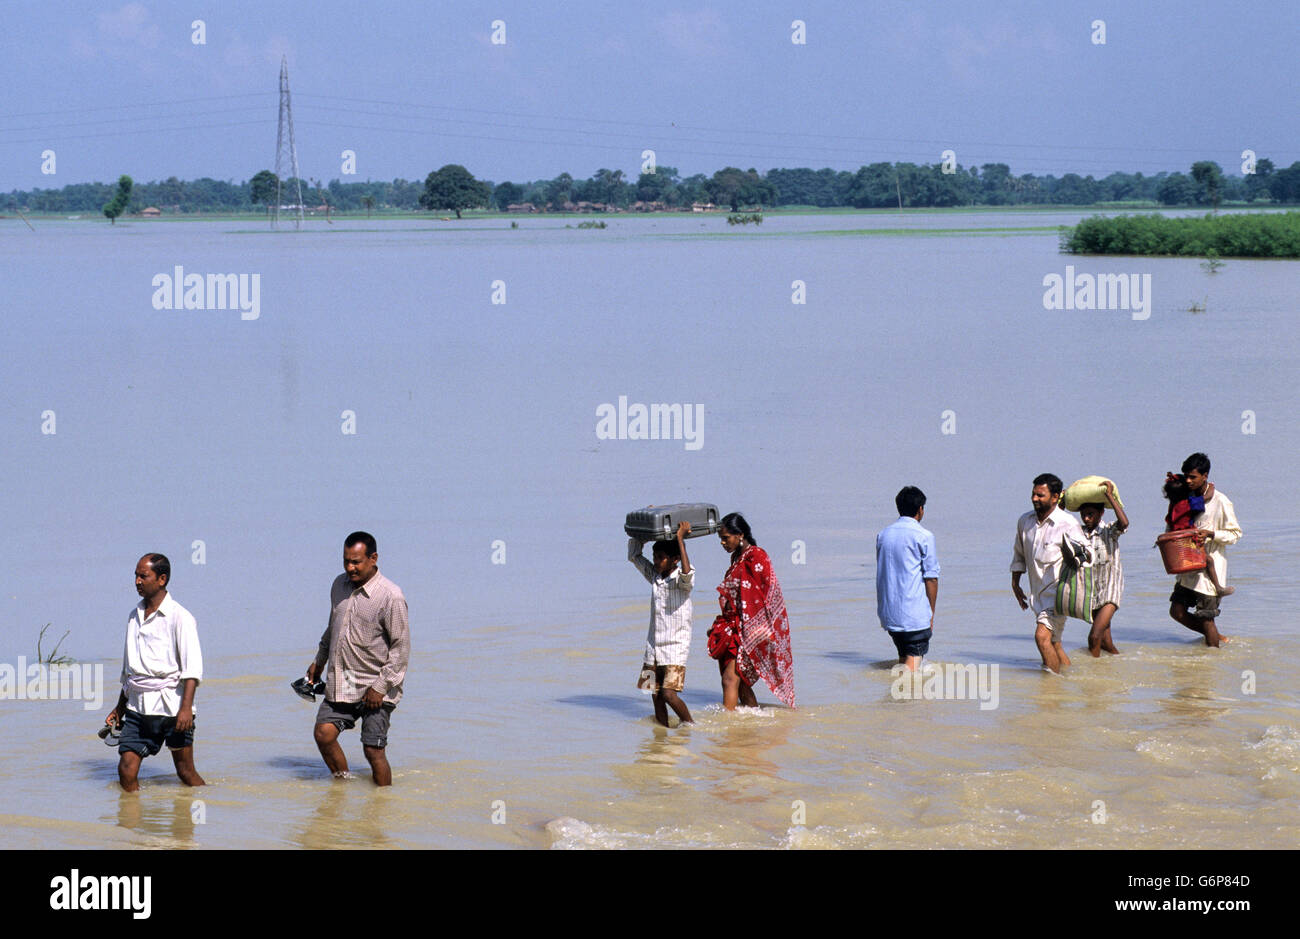 Indien, Bihar, Überflutung am Bagmati River ein Zweig der Ganges/Ganga Fluss wegen der schweren Monsunregen und schmelzen die Gletscher im Himalaya, Broken Bridge und beschädigte Straße, Menschen zu Fuß im Wasser, Klimawandel und globale Erwärmung Auswirkungen Stockfoto